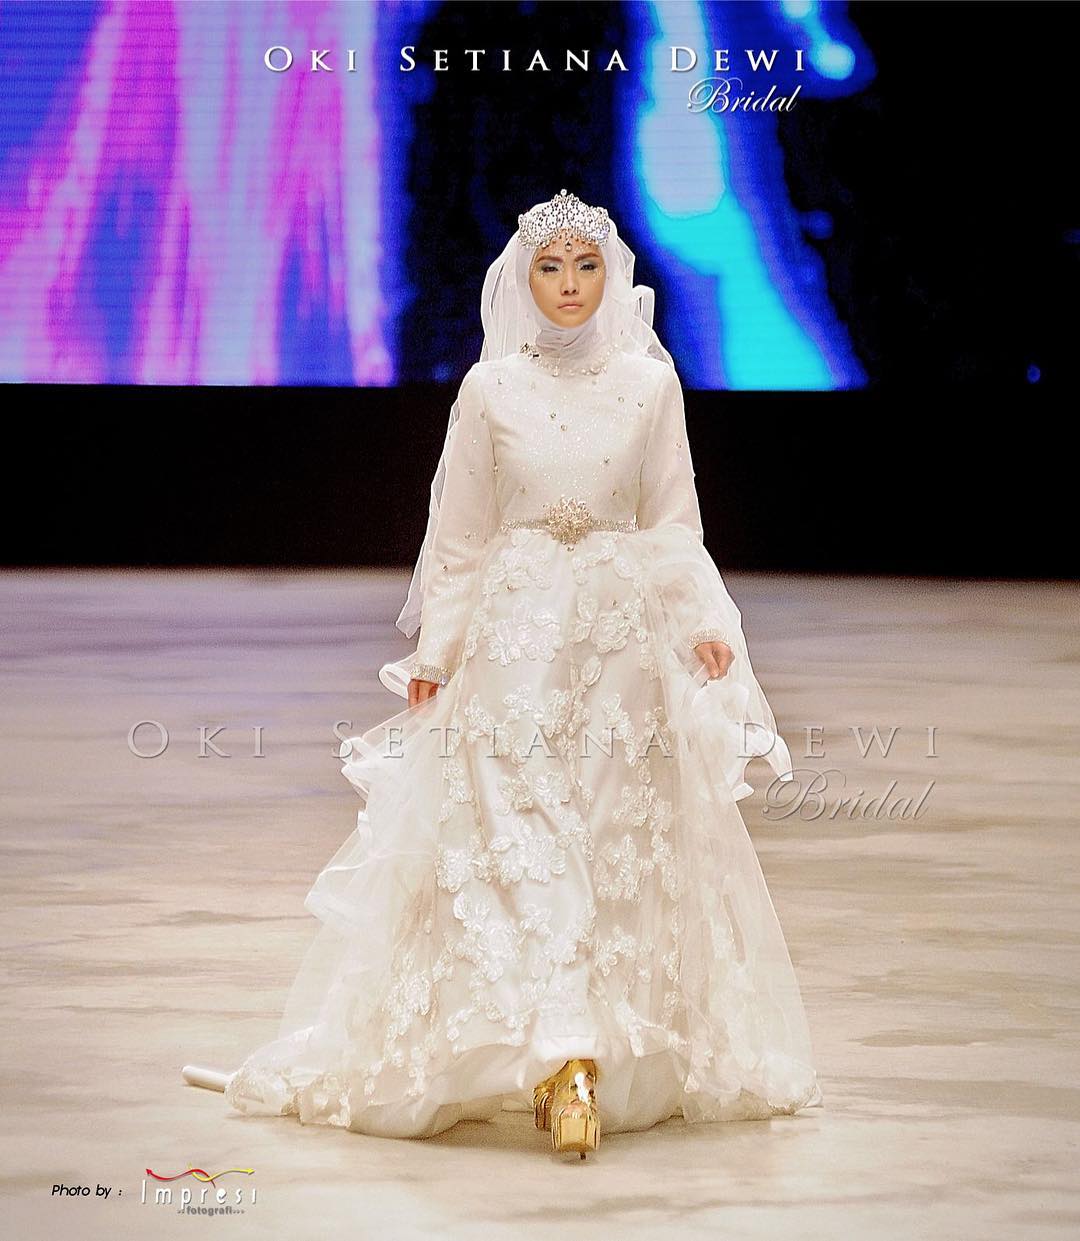 Oki Setiana Dewi Hijab | New Style for 20162017